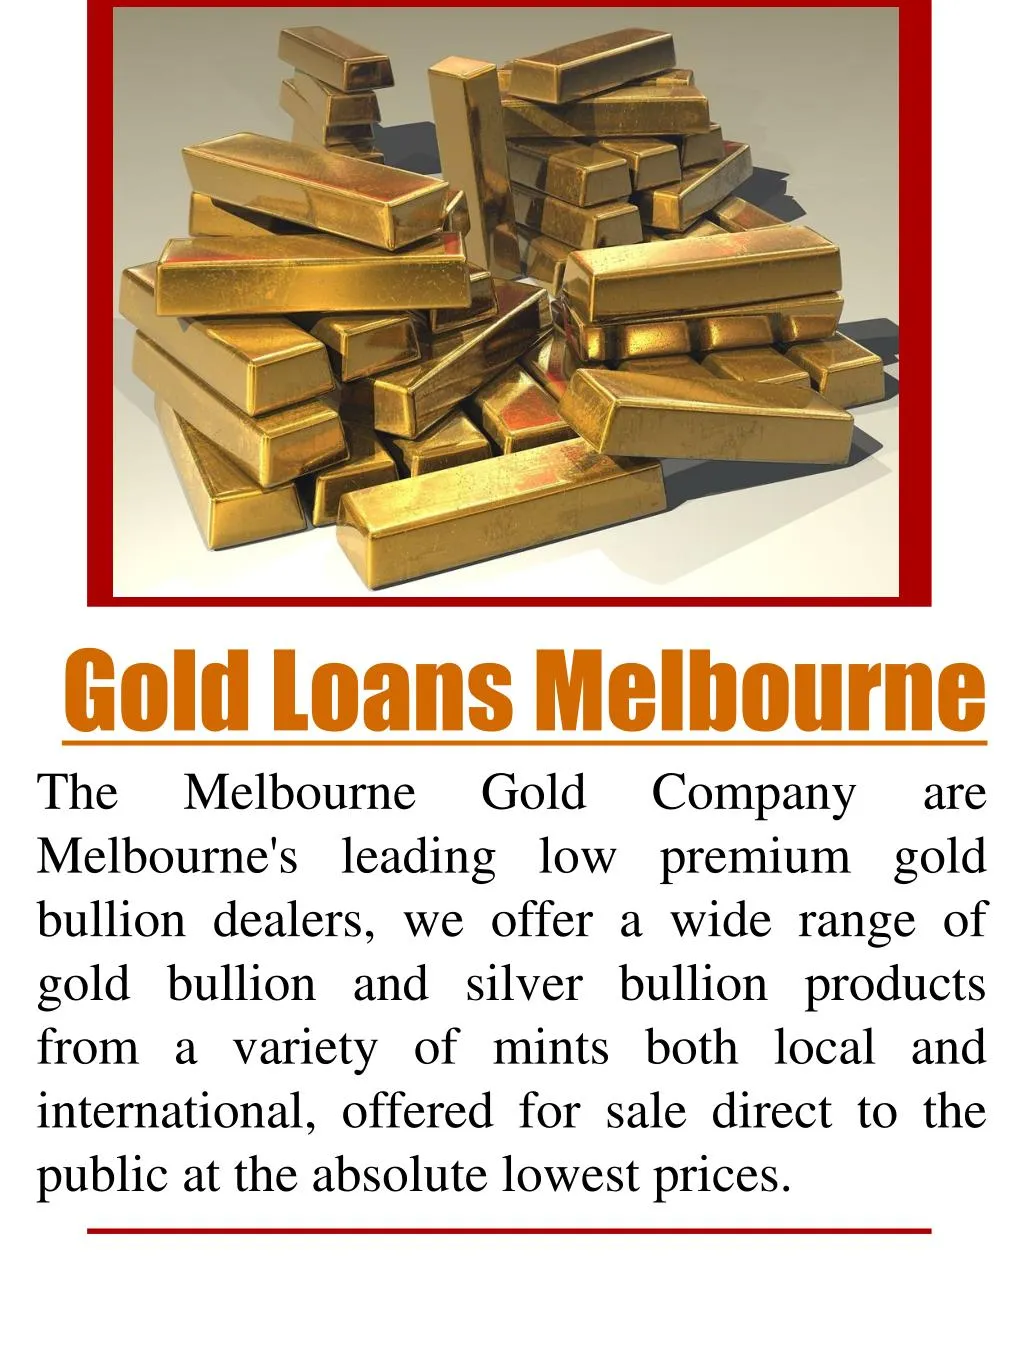 gold loans melbourne n.